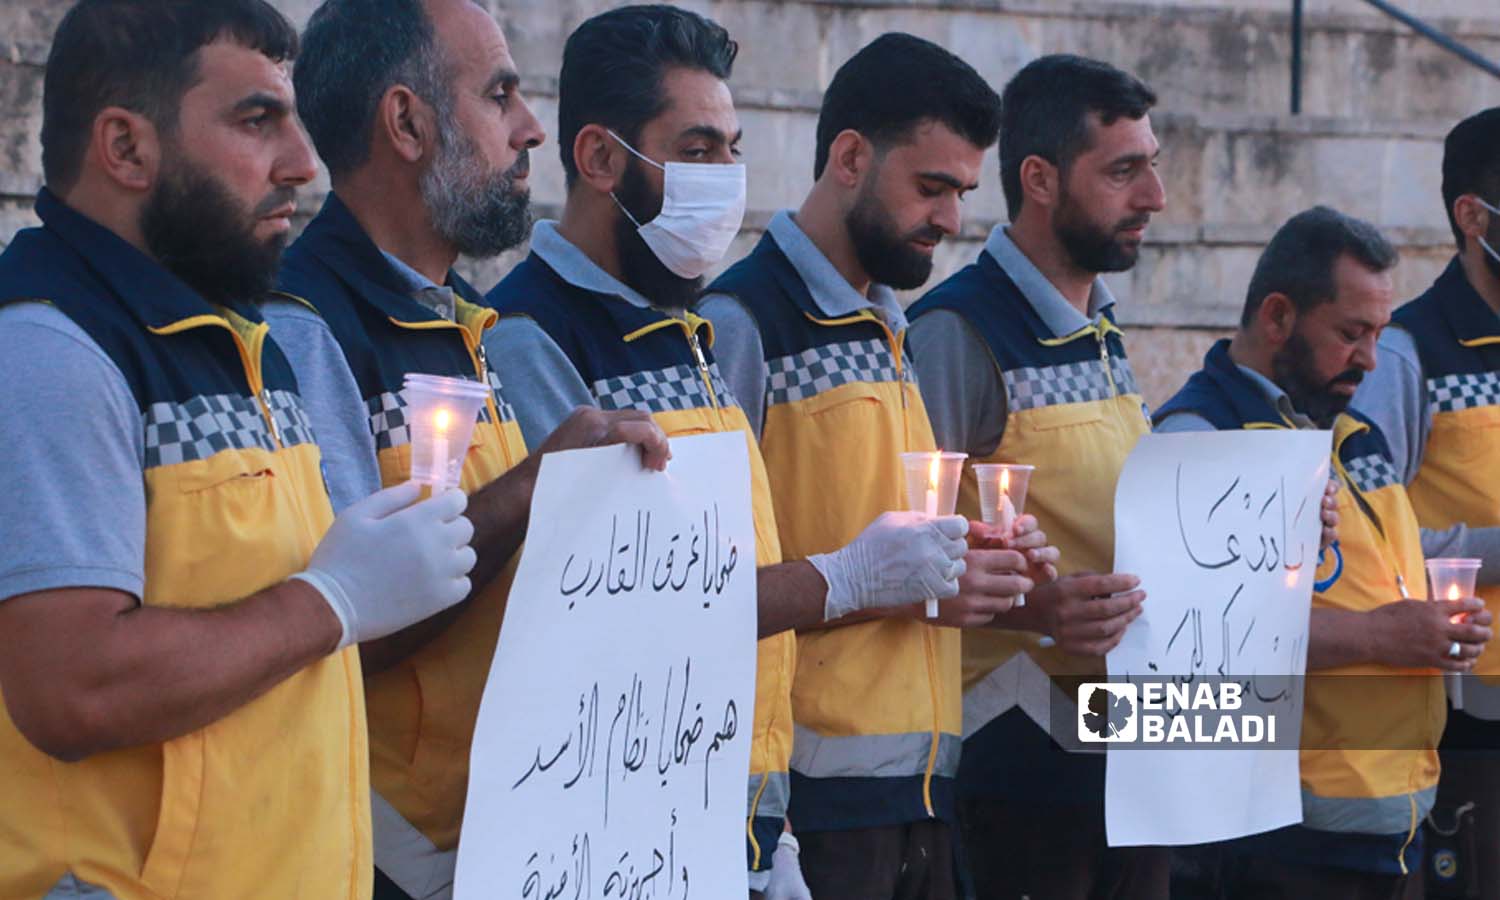  متطوعو الدفاع المدني السوري في مدينة إدلب يشعلون الشموع حداداً على أرواح الضحايا الذين غرقوا في قارب الموت على سواحل اليونان- 18 حزيران 2023 (عنب بلدي- أنس الخولي)